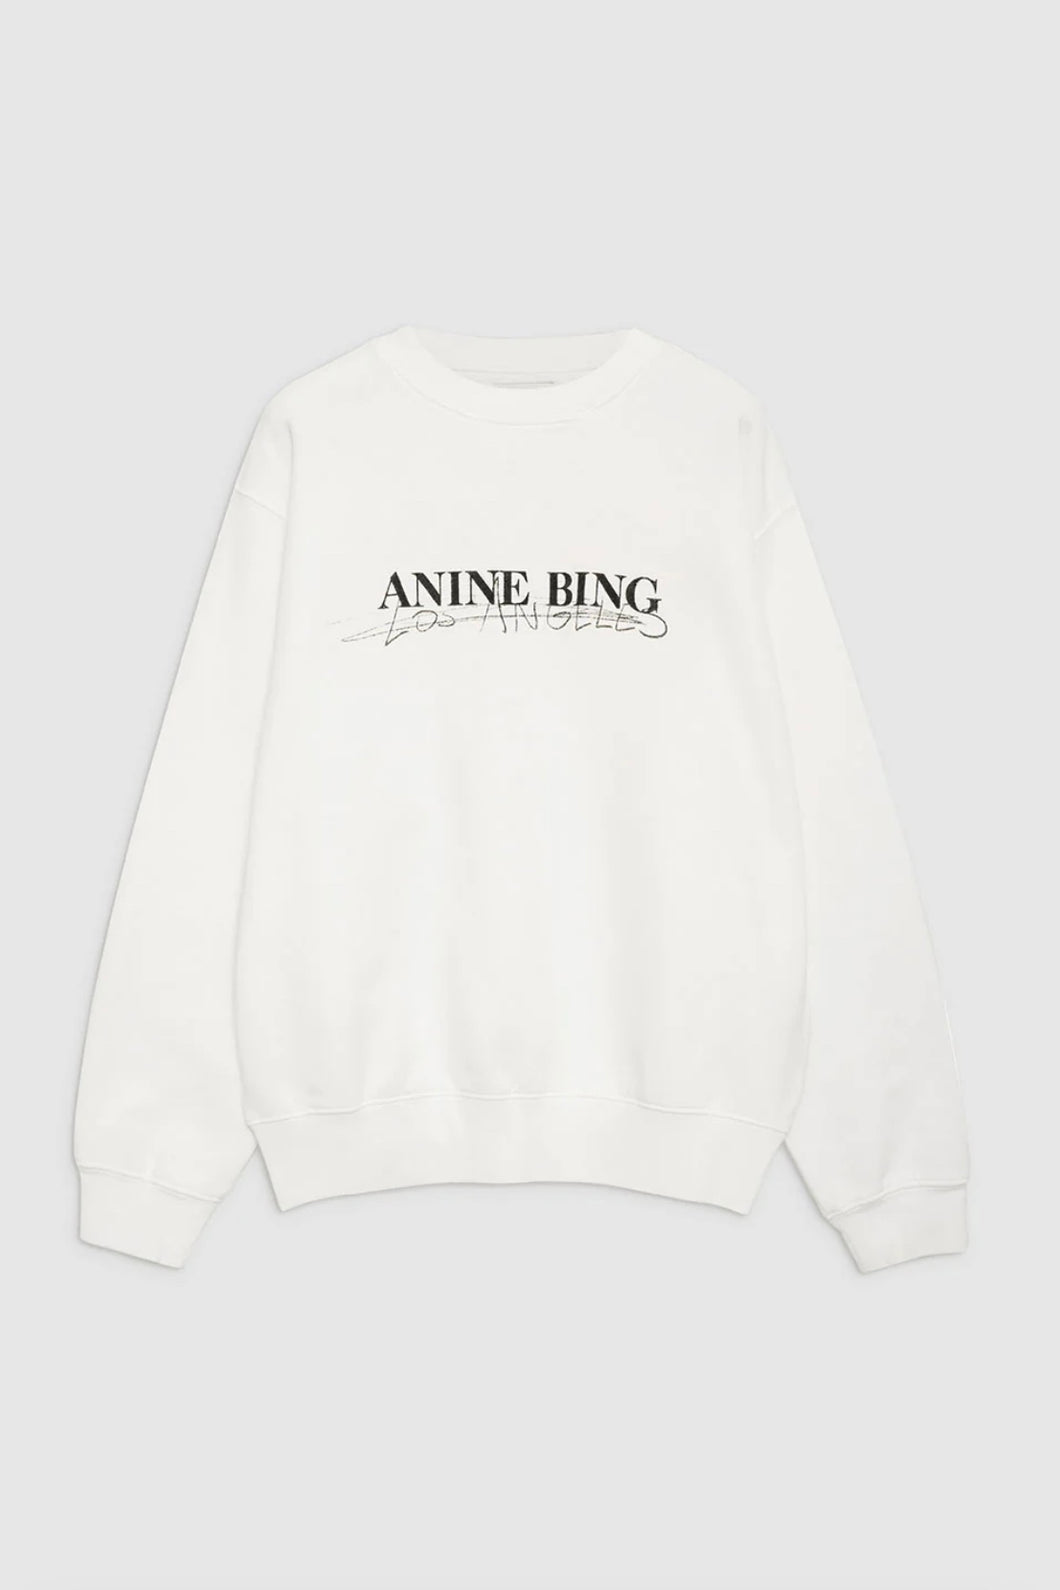 Anine Bing Ramona Sweatshirt Doodle Ivory A-08-10065-150